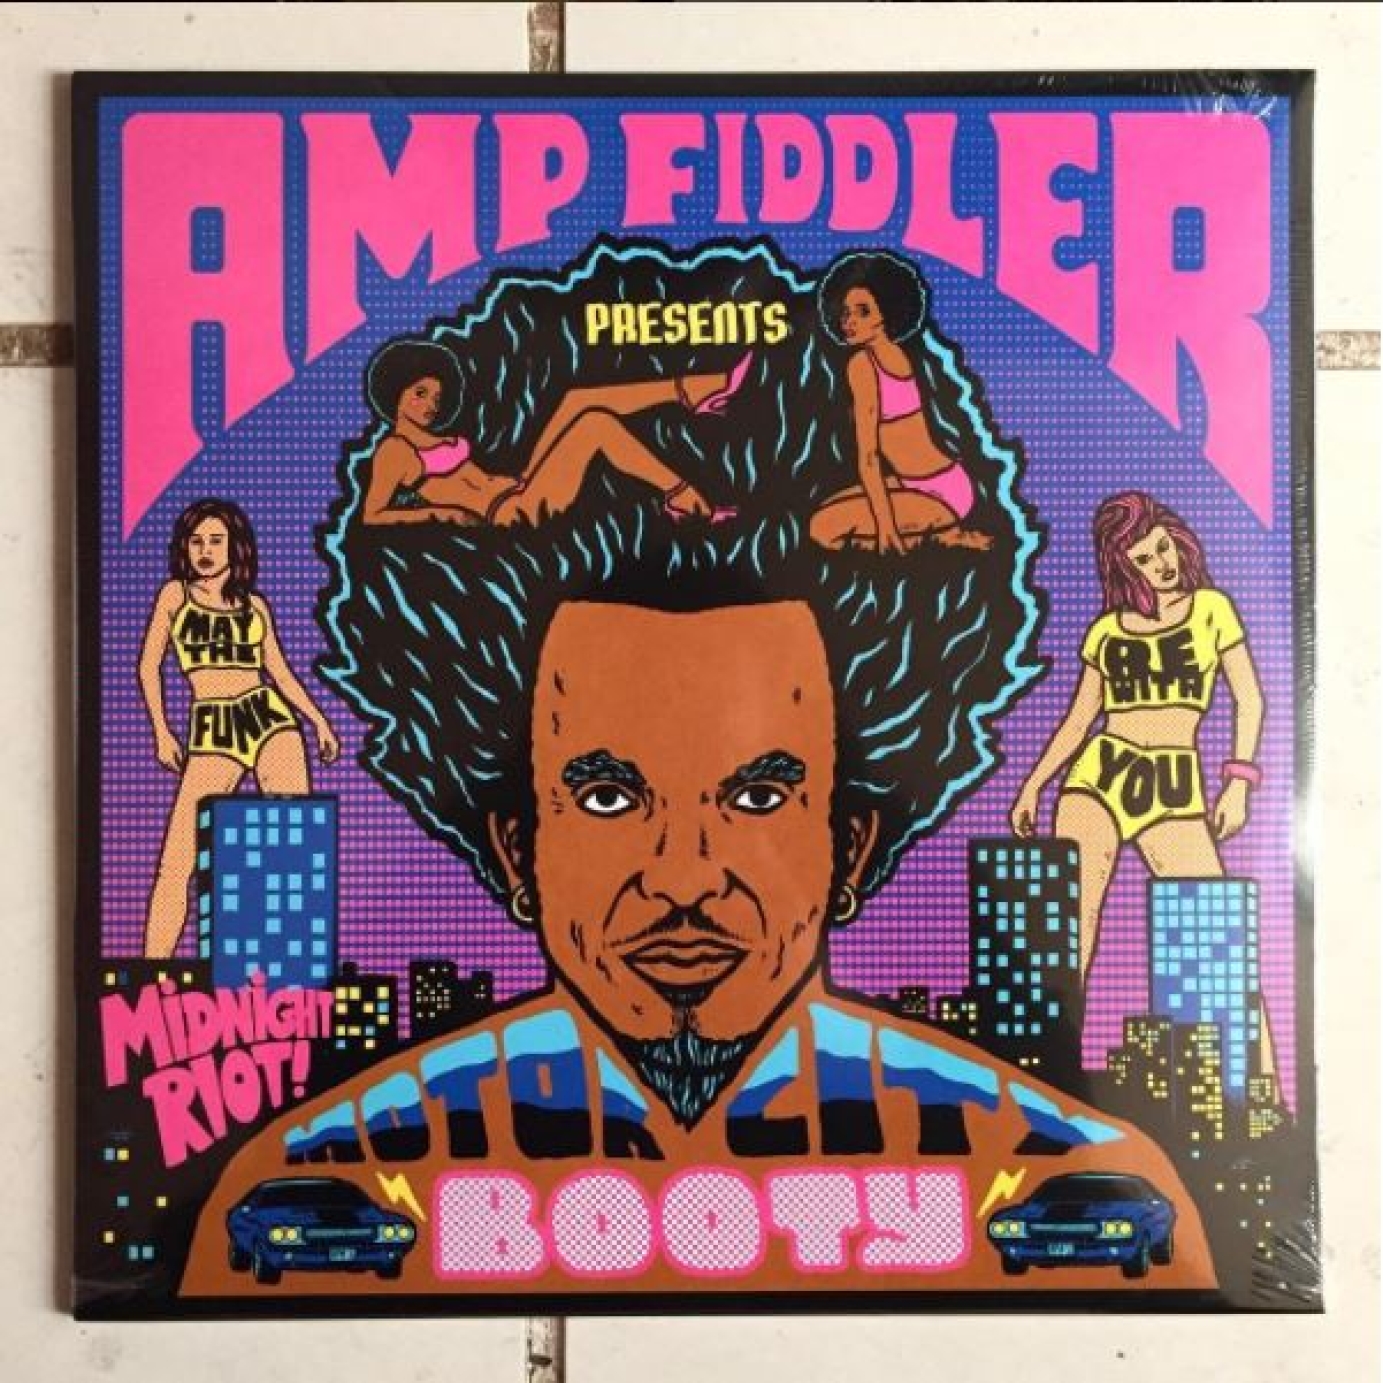 Artwork for Amp Fiddler by James C Wilson